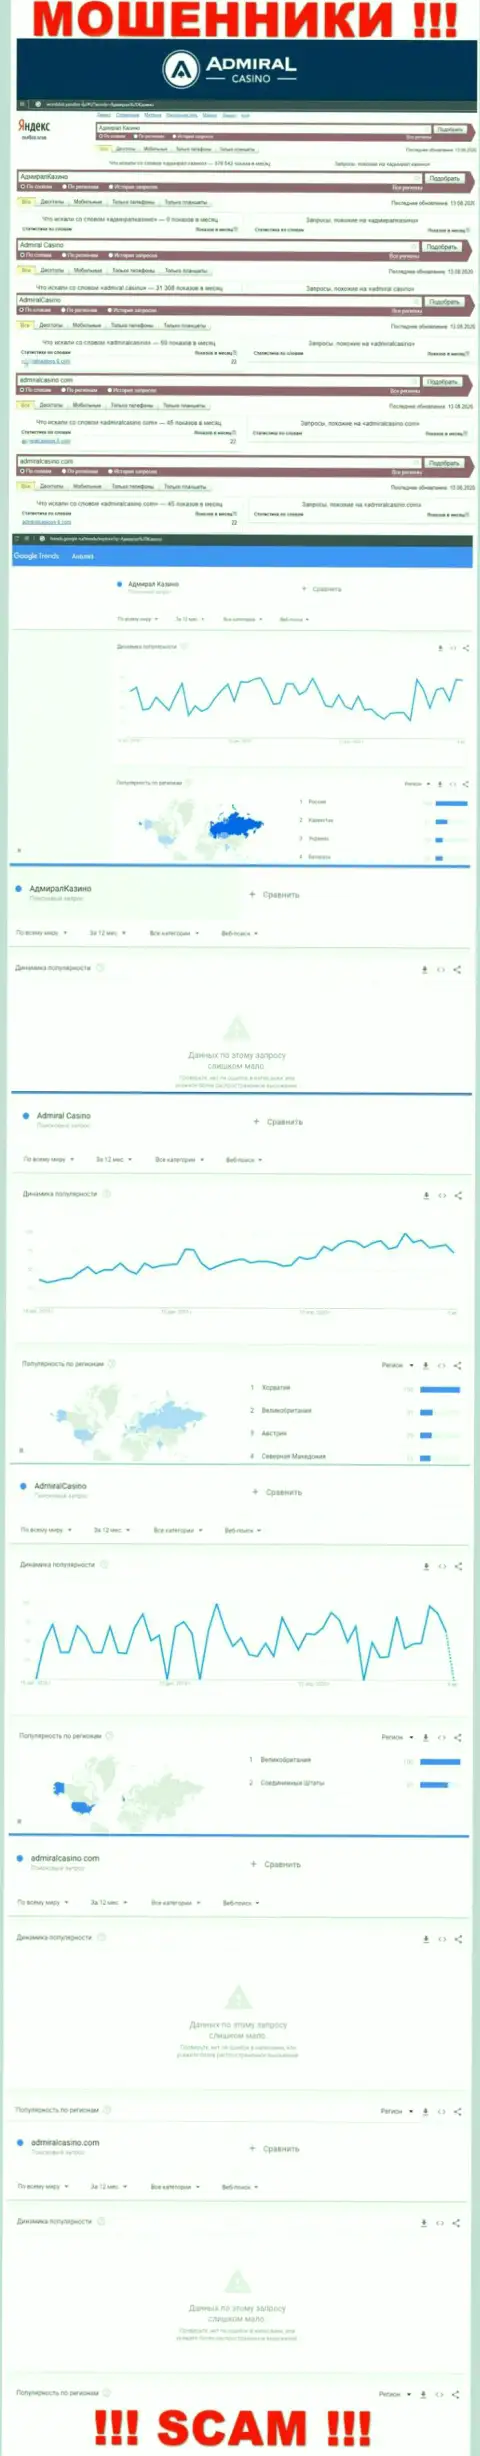 Сколько людей пытались разыскать сведения о АдмиралКазино - статистика online-запросов по указанной конторе